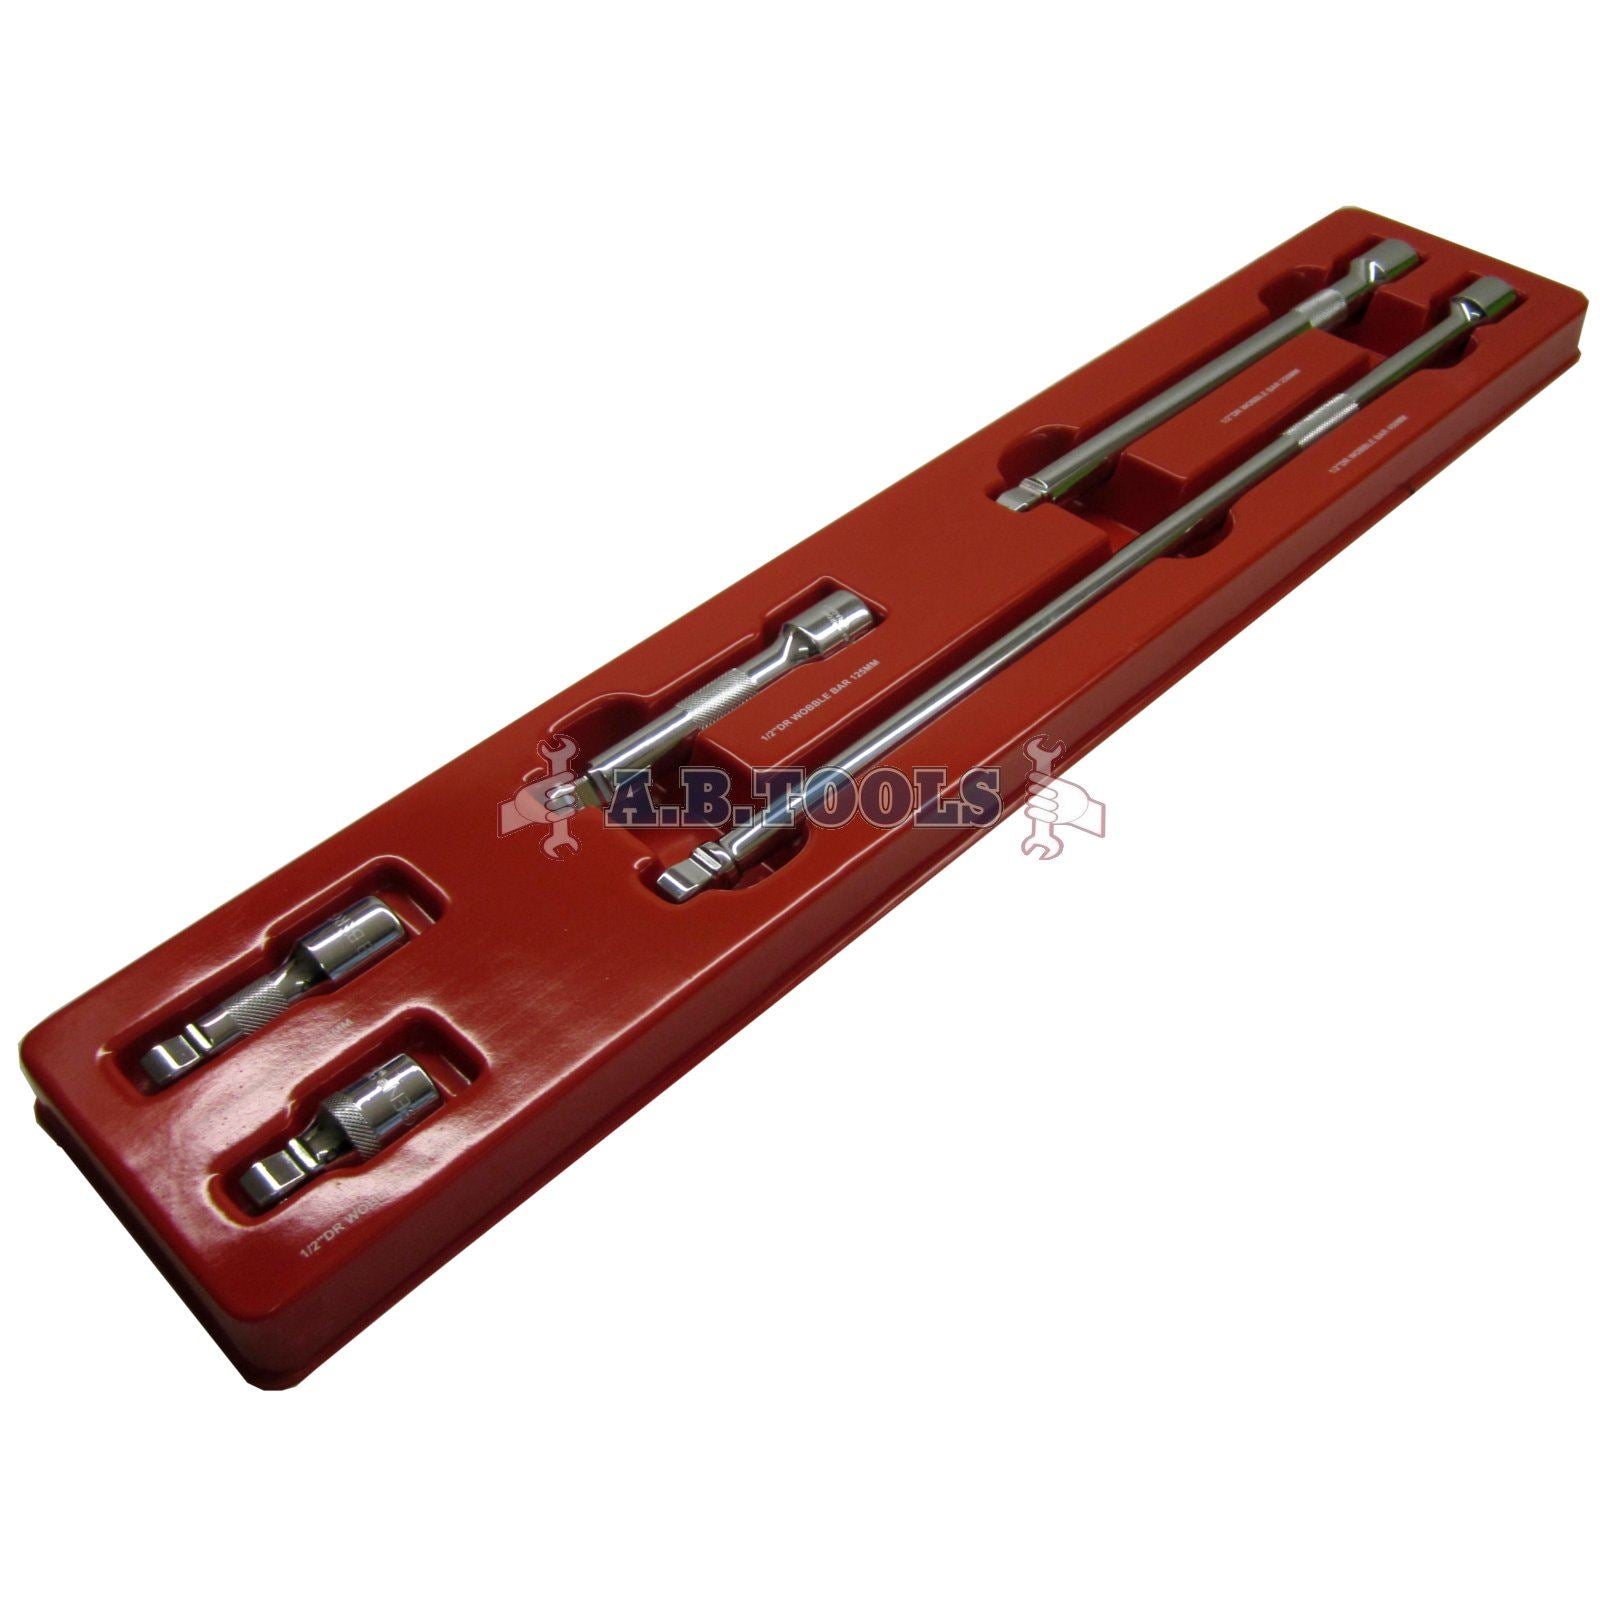 1/2" Drive Wobble Socket Ratchet Extension Bar Set 50mm - 450mm 5pc Set